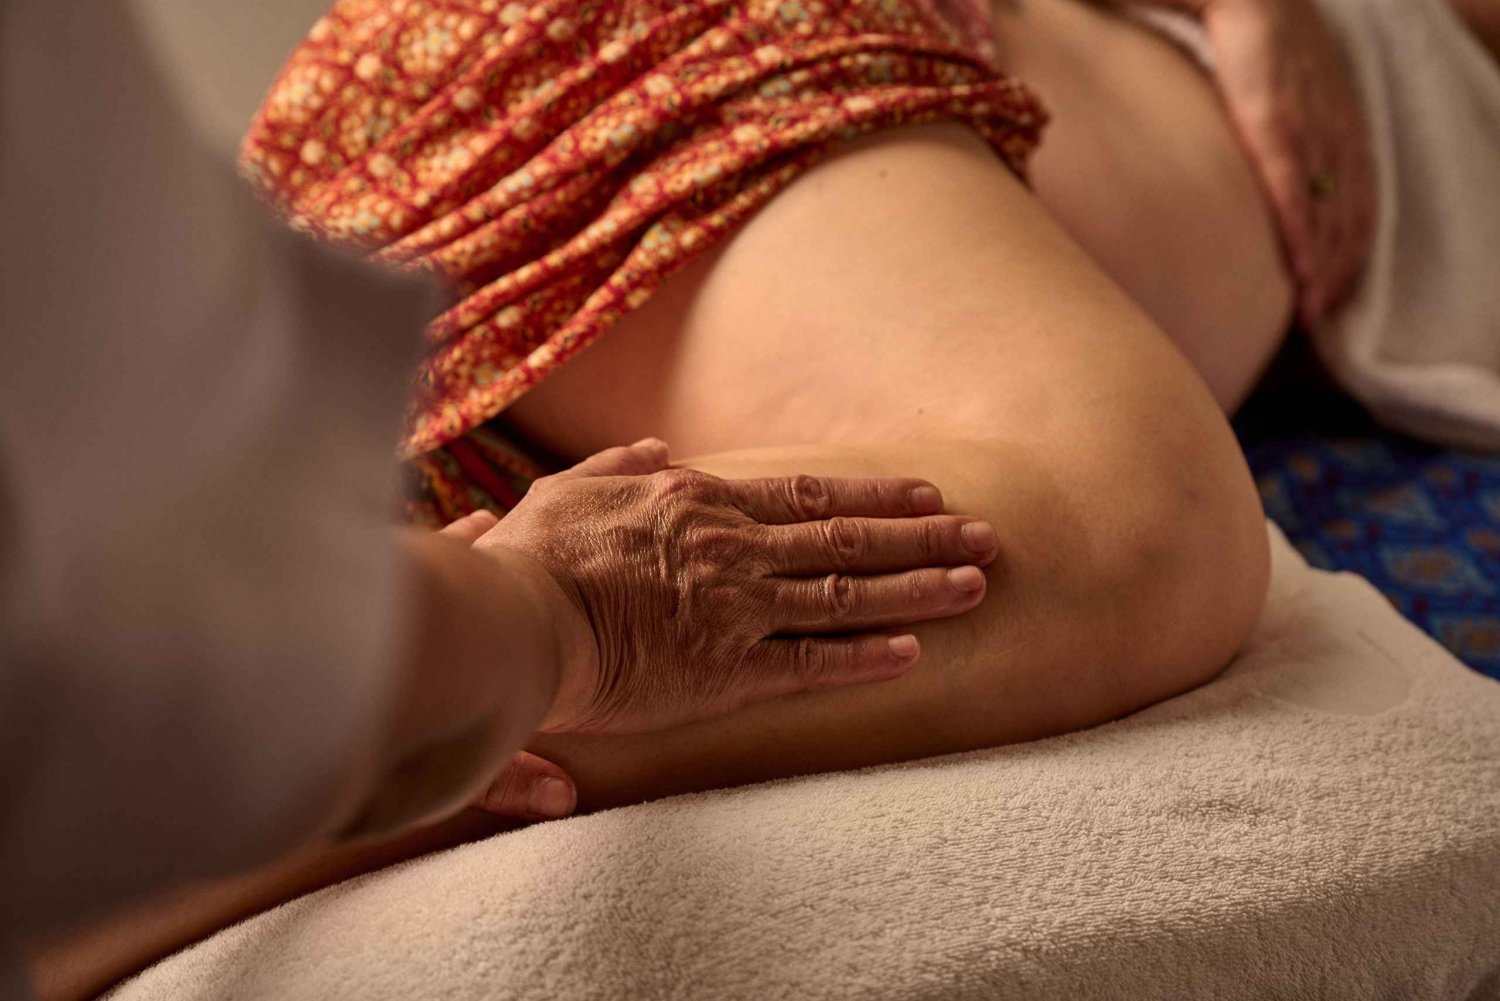 Pregnancy Massage